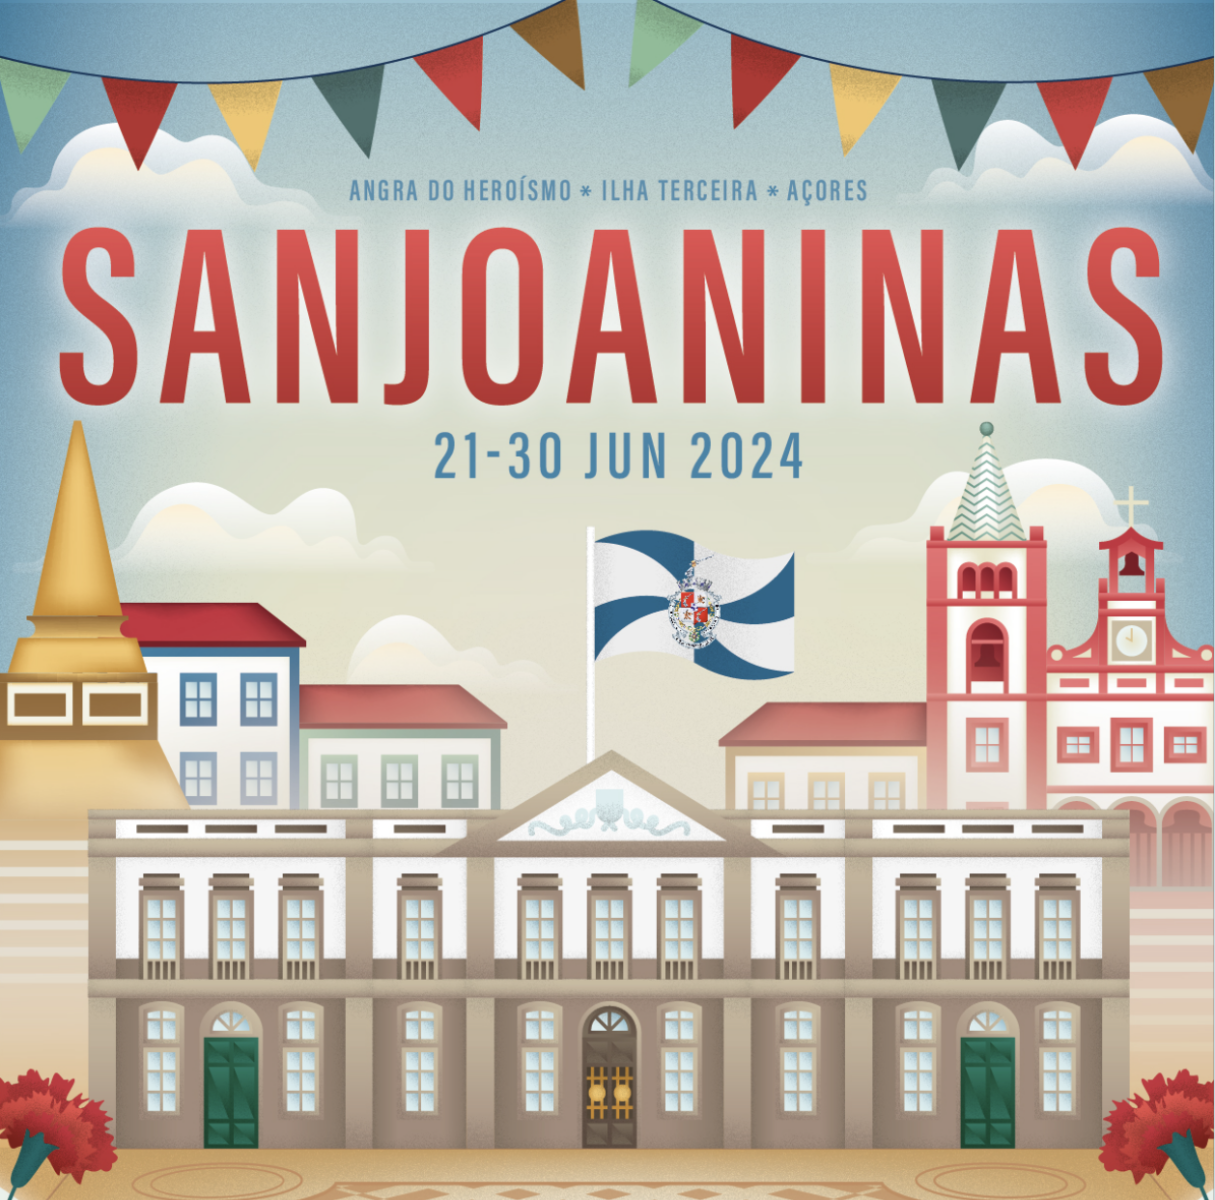 Sanjoaninas 2024 Festival em Ilha Terceira Açores